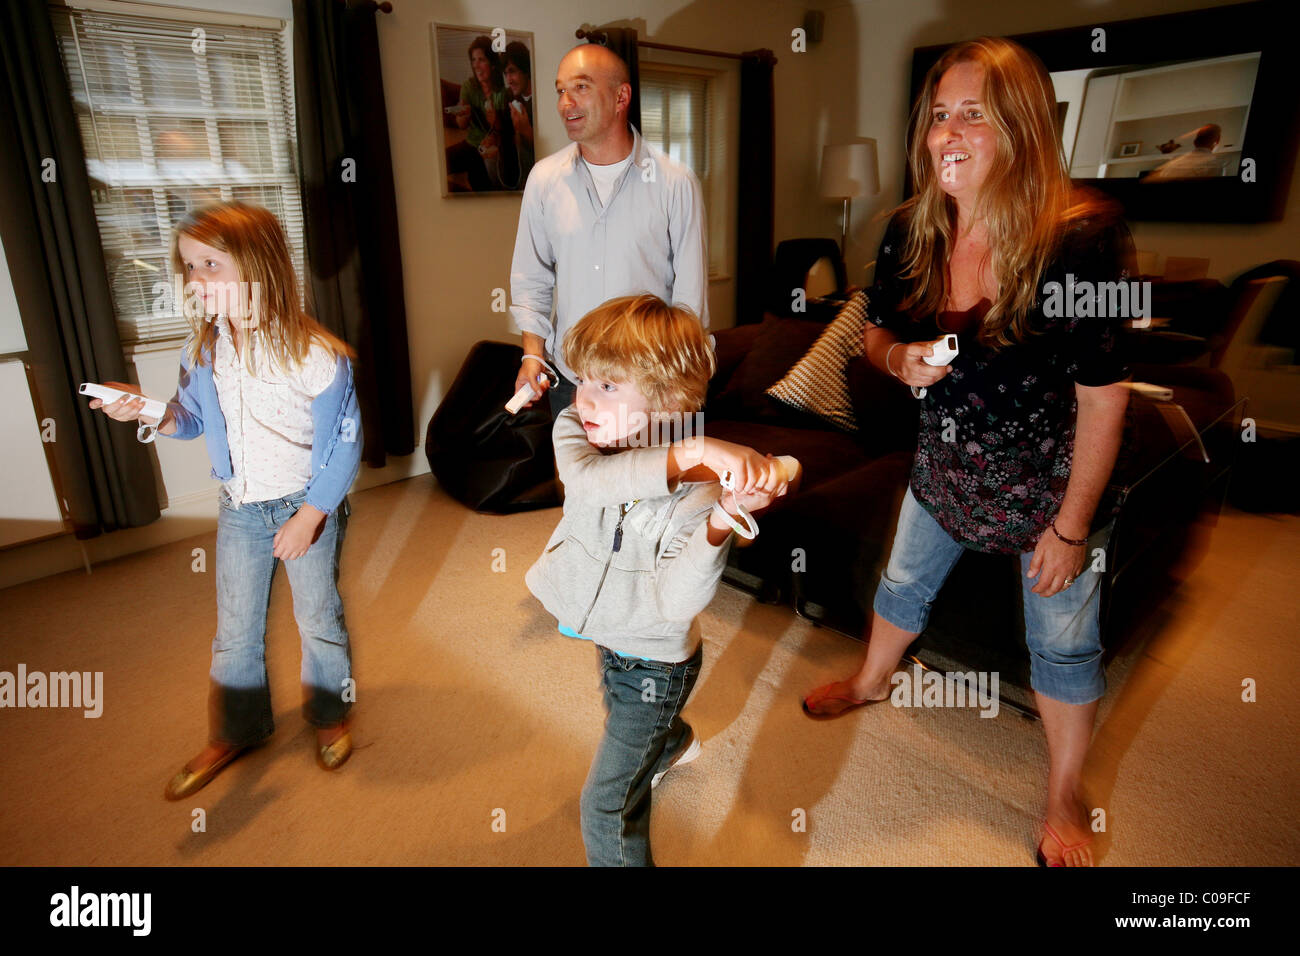 Jouer en famille accueil Wii console de jeux vidéo ensemble dans leur  salon, Londres, Angleterre, Royaume-Uni. Photo:Jeff Gilbert Photo Stock -  Alamy